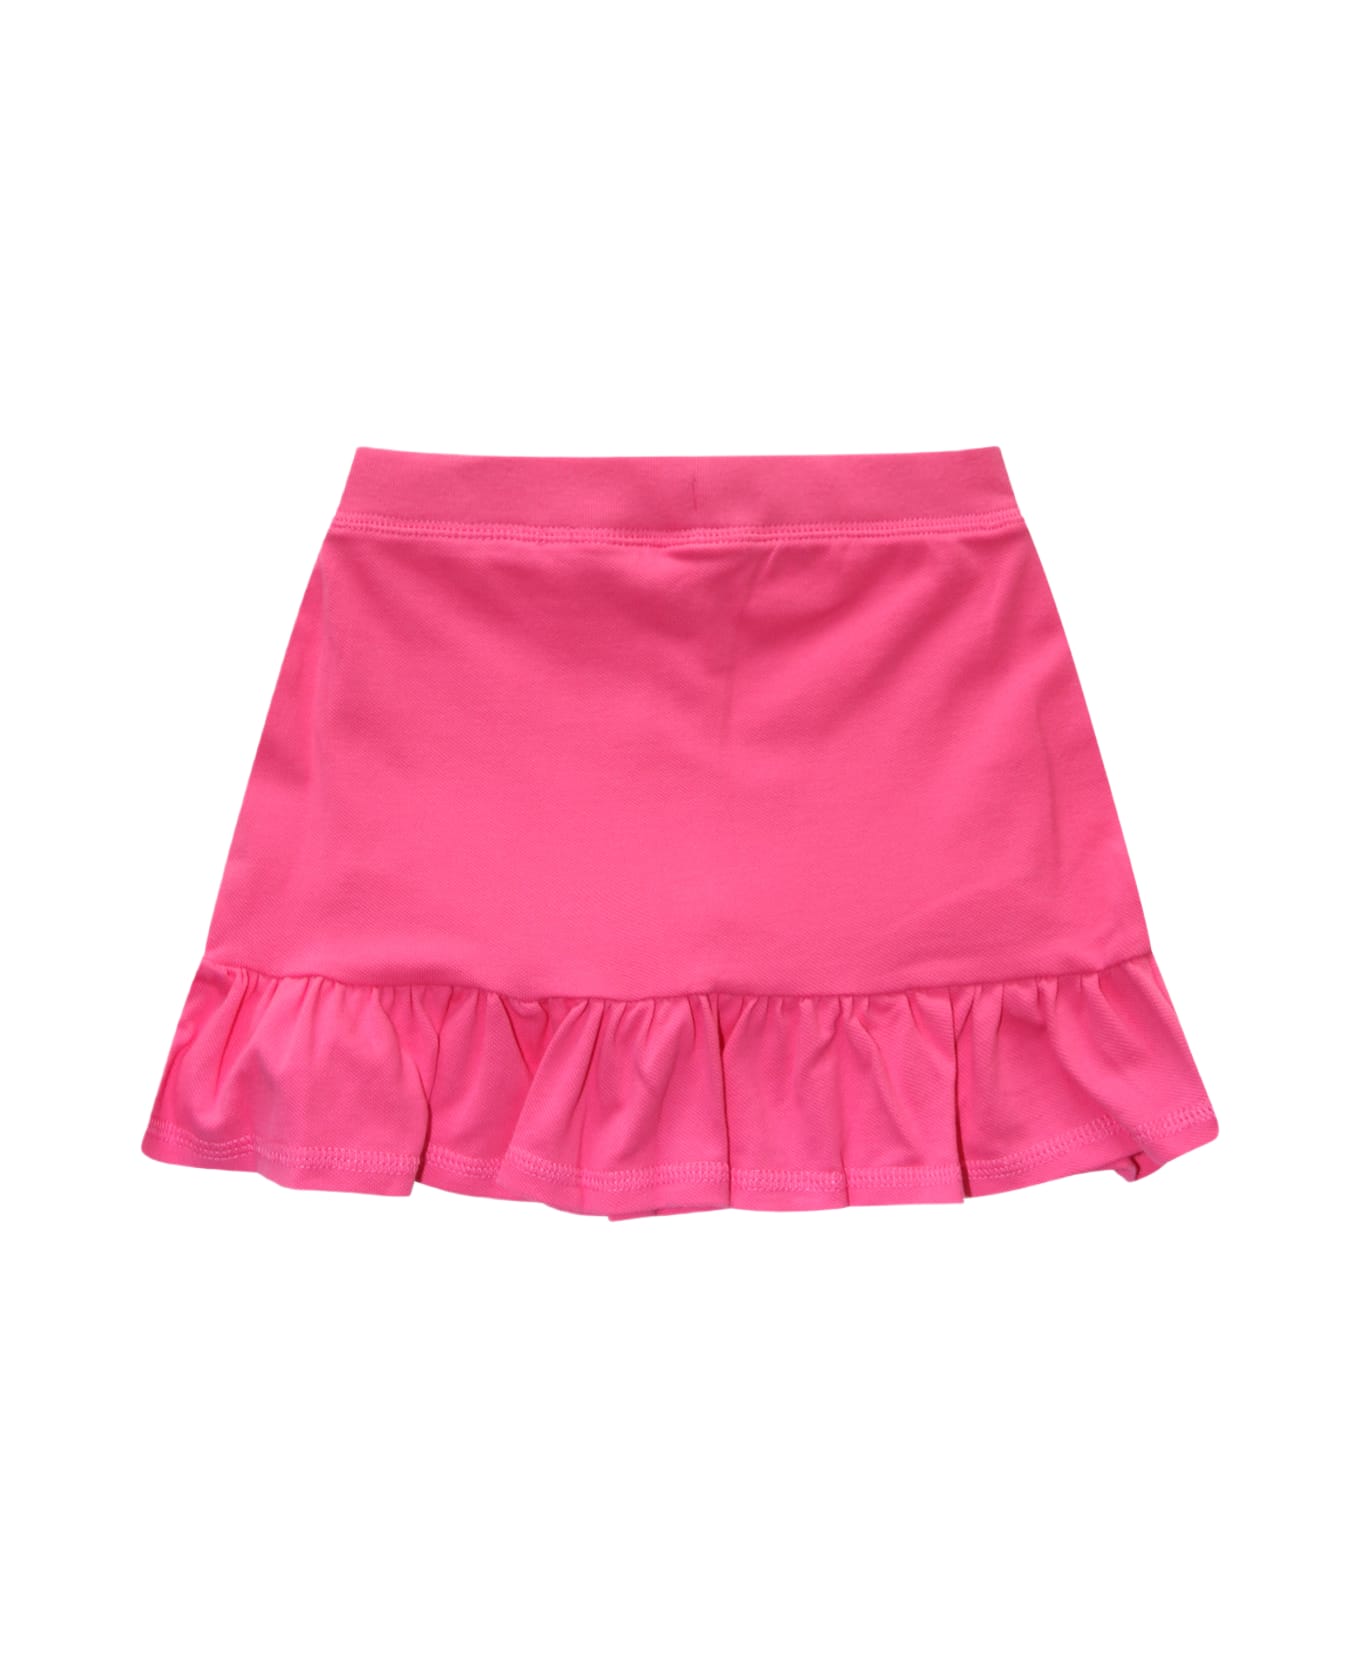 Polo Ralph Lauren Fuchsia Cotton Skirt - Fuchsia